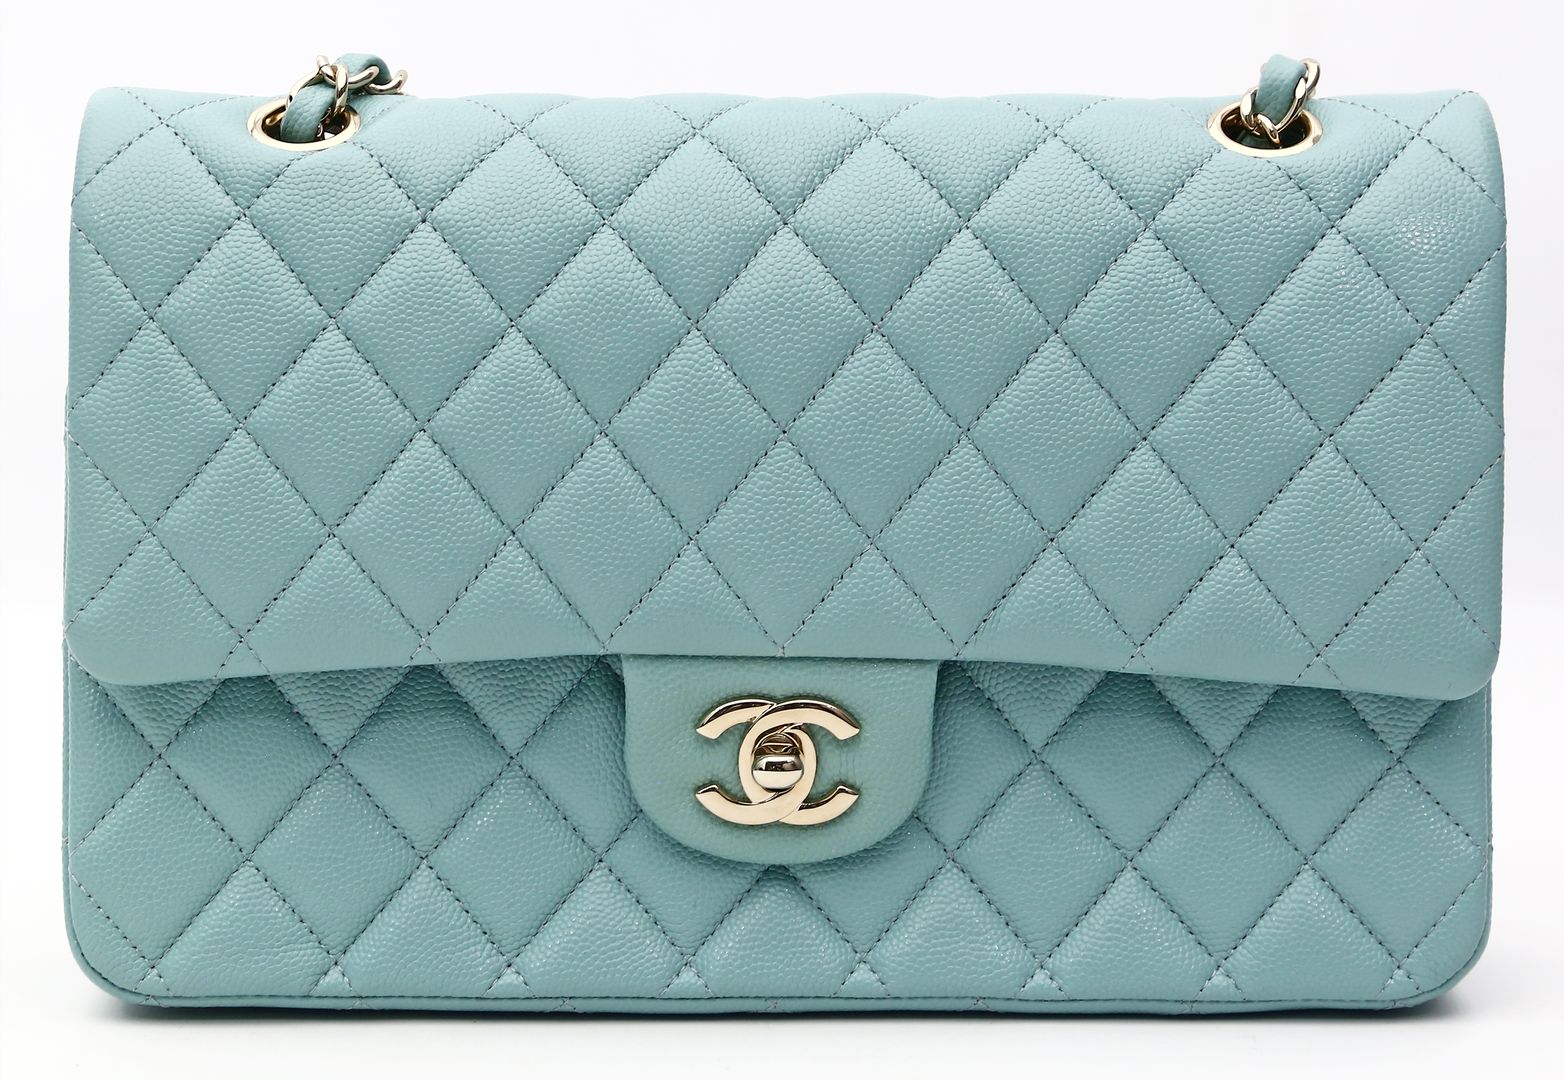 Flap bag  "Tiffany", Chanel.